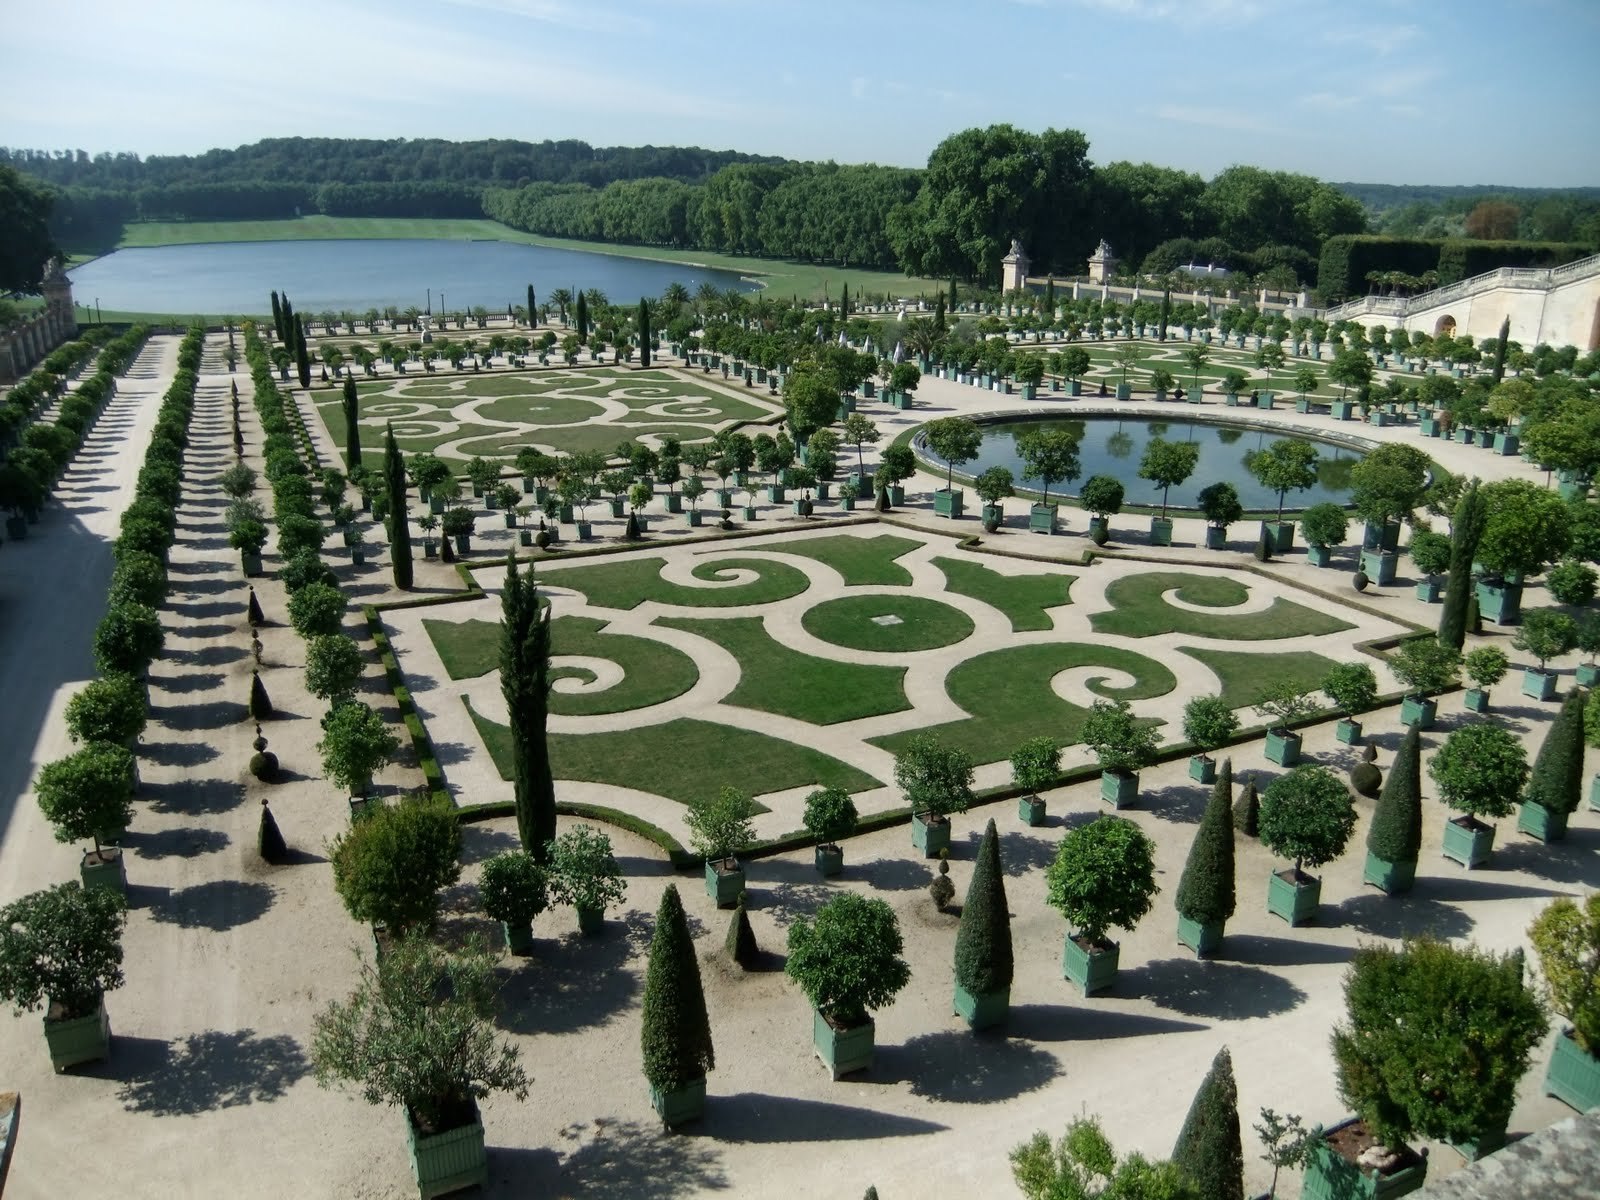 Chateau de versailles. Французский сад Версаль. Версальский парк: Гармония совершенства. Дворцово-парковый комплекс Версаль. Парковый комплекс в Версале..